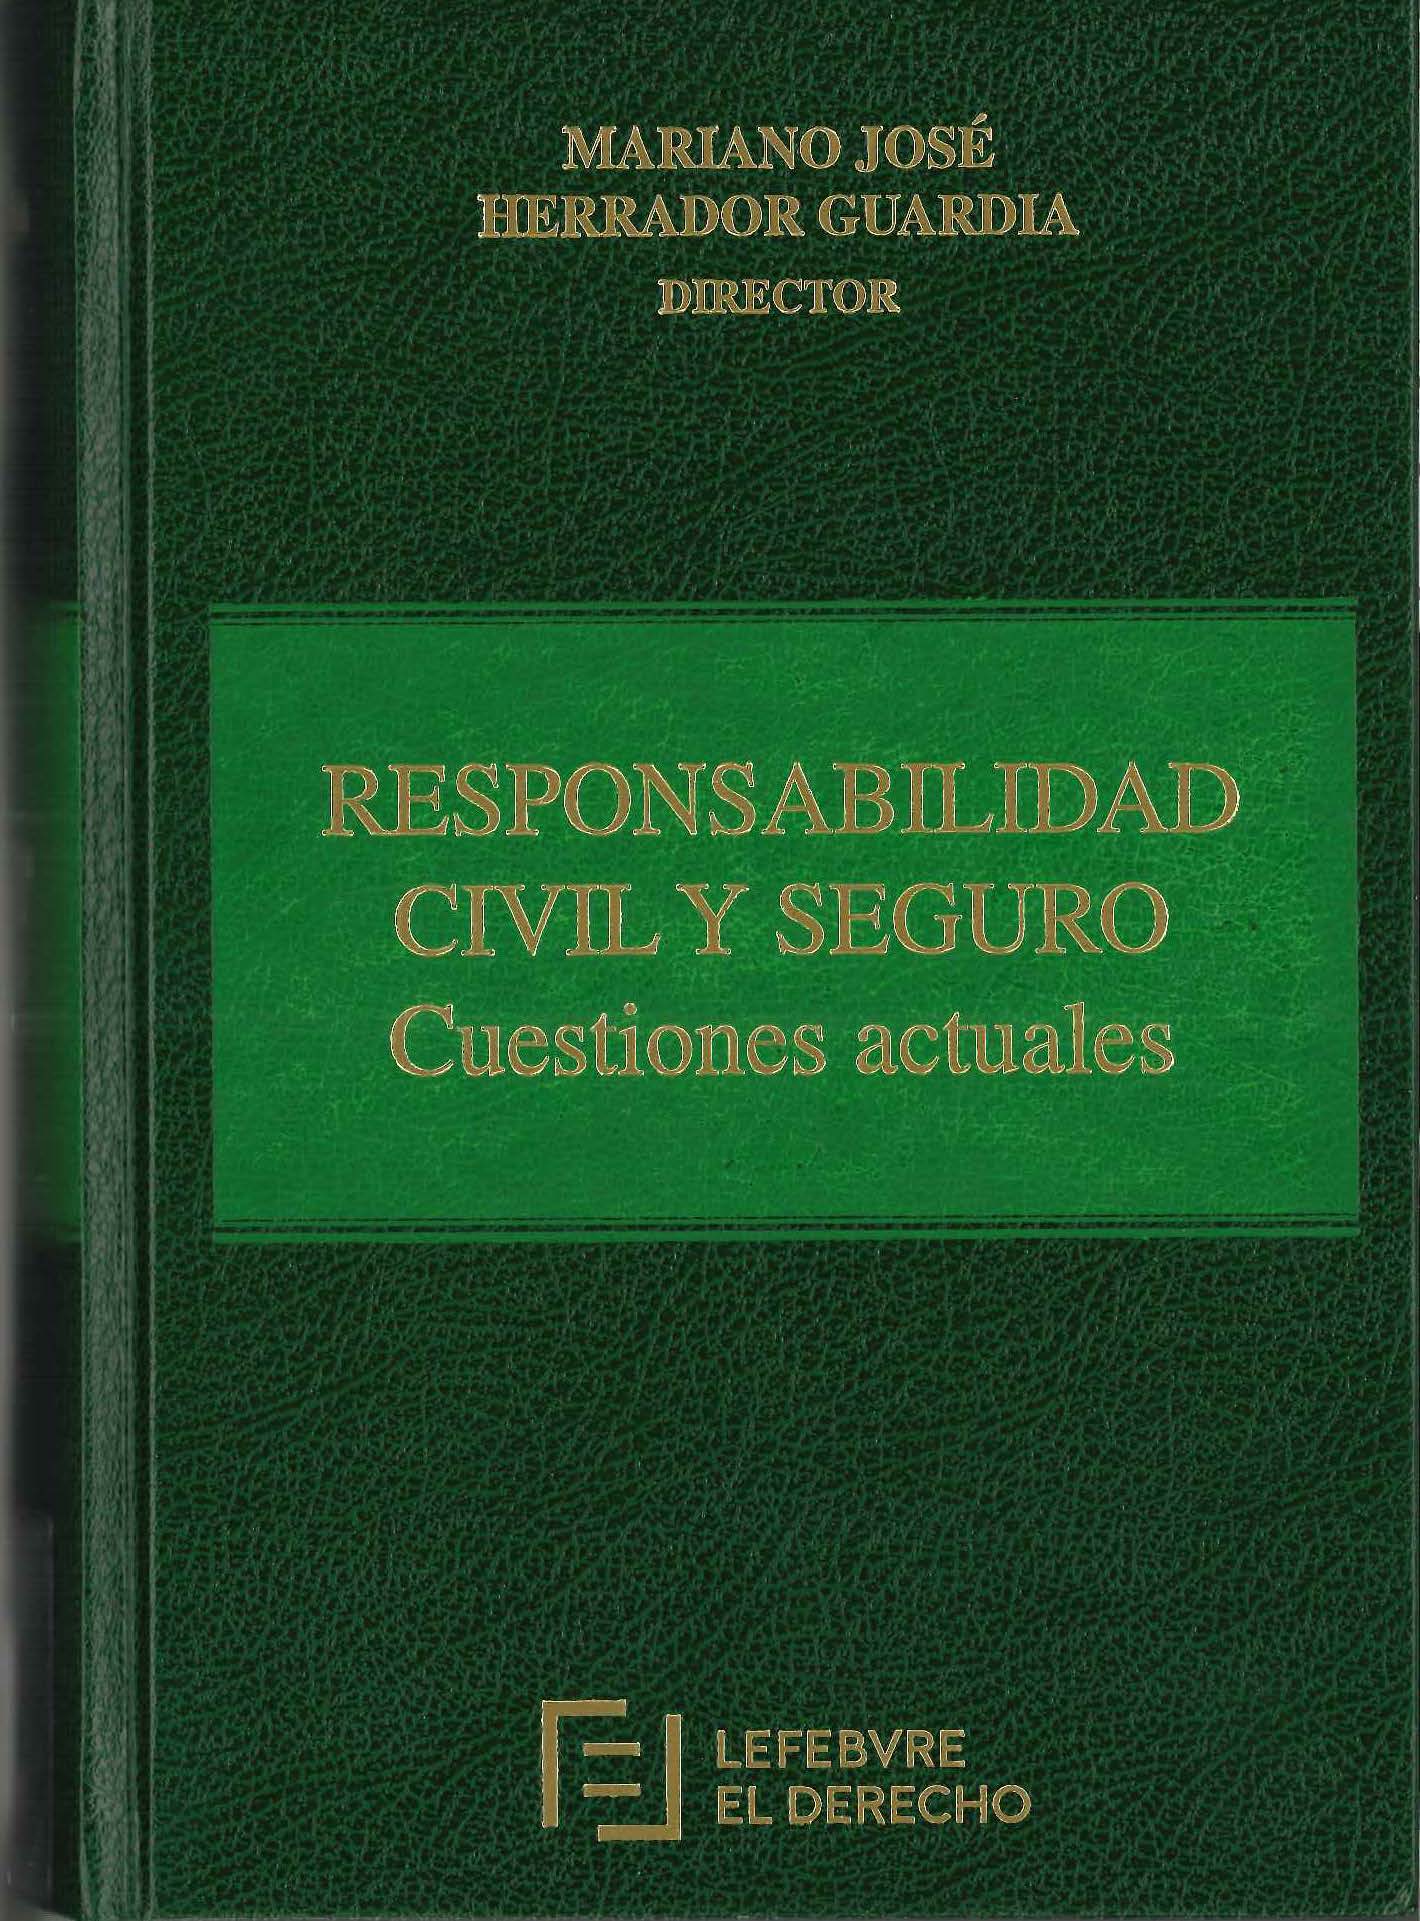 Imagen de portada del libro Responsabilidad civil y seguro